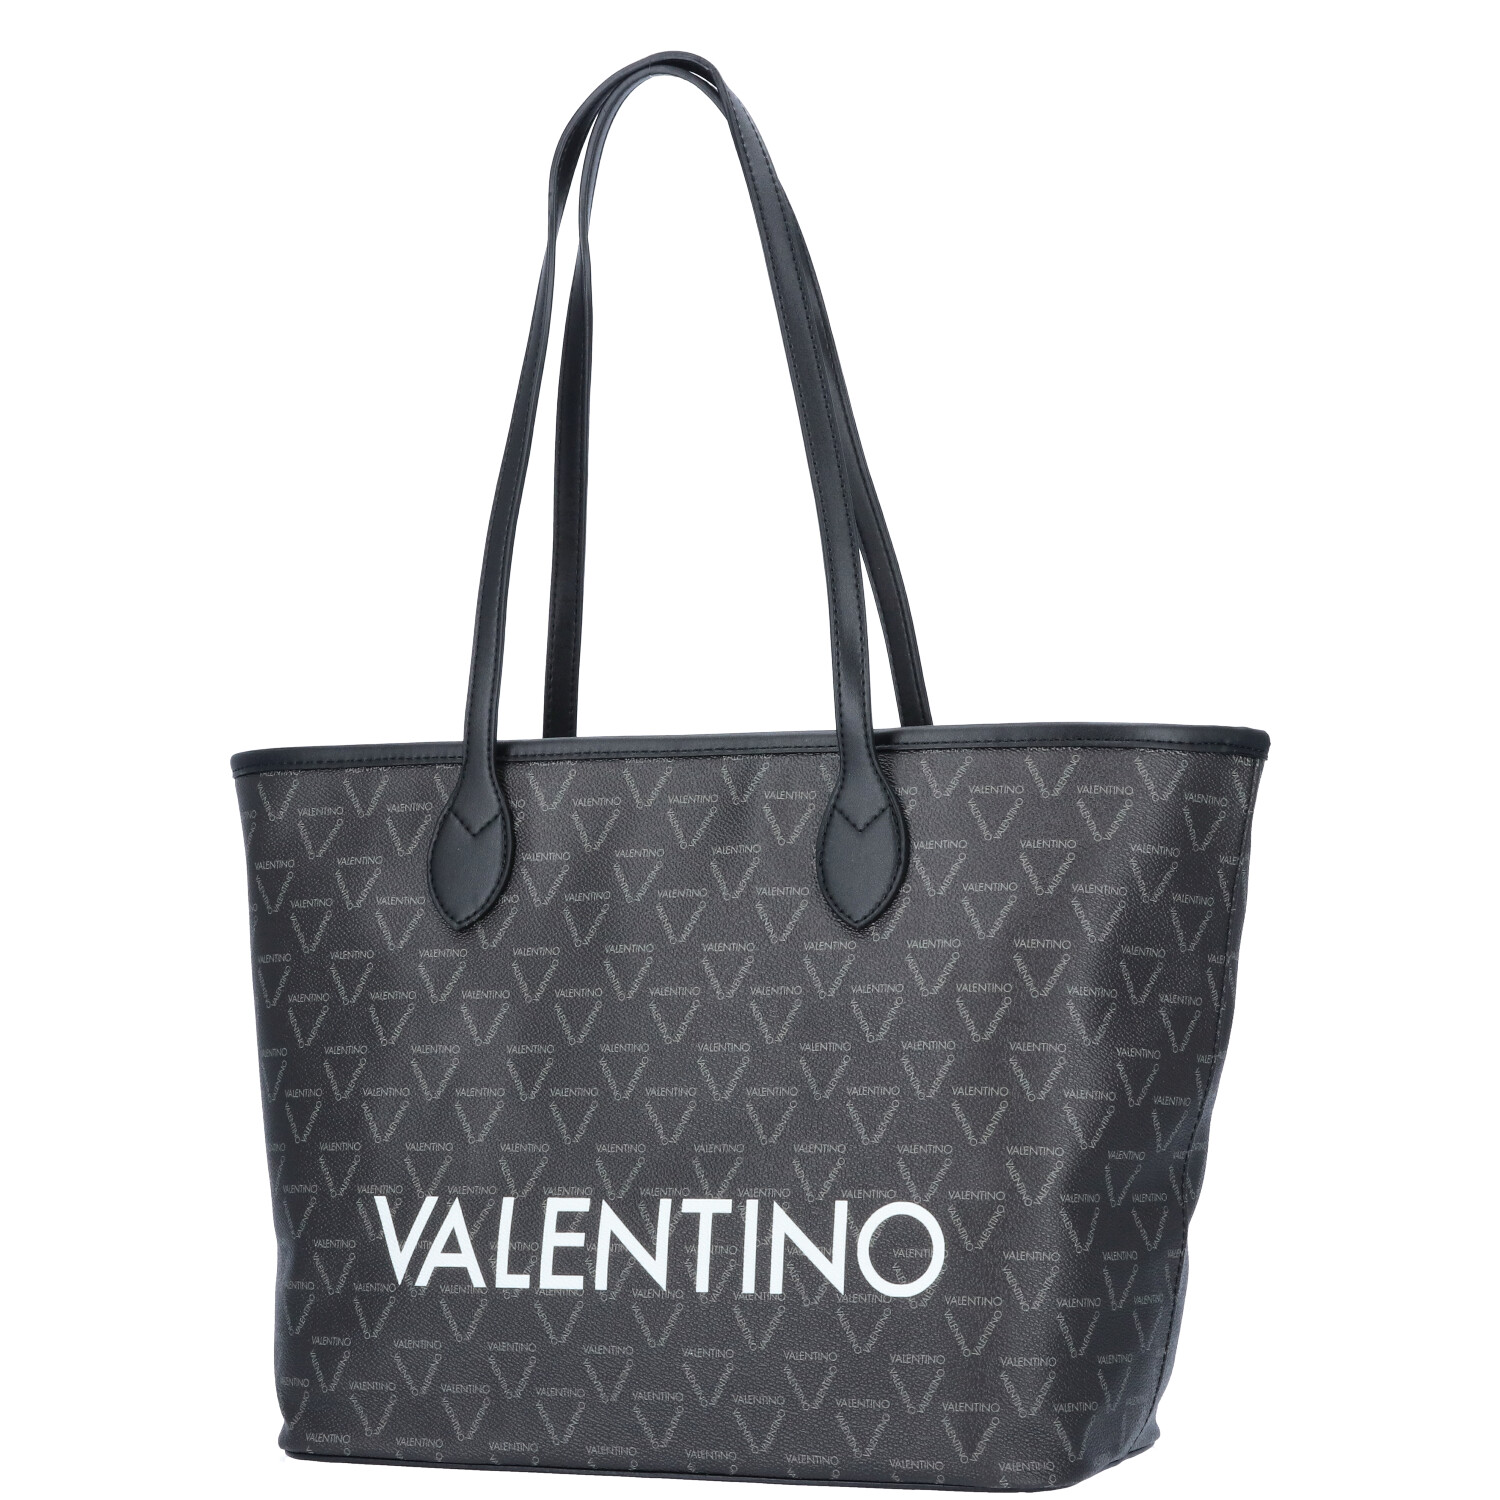 Valentino Bags Damentasche Liuto nero/multicolor